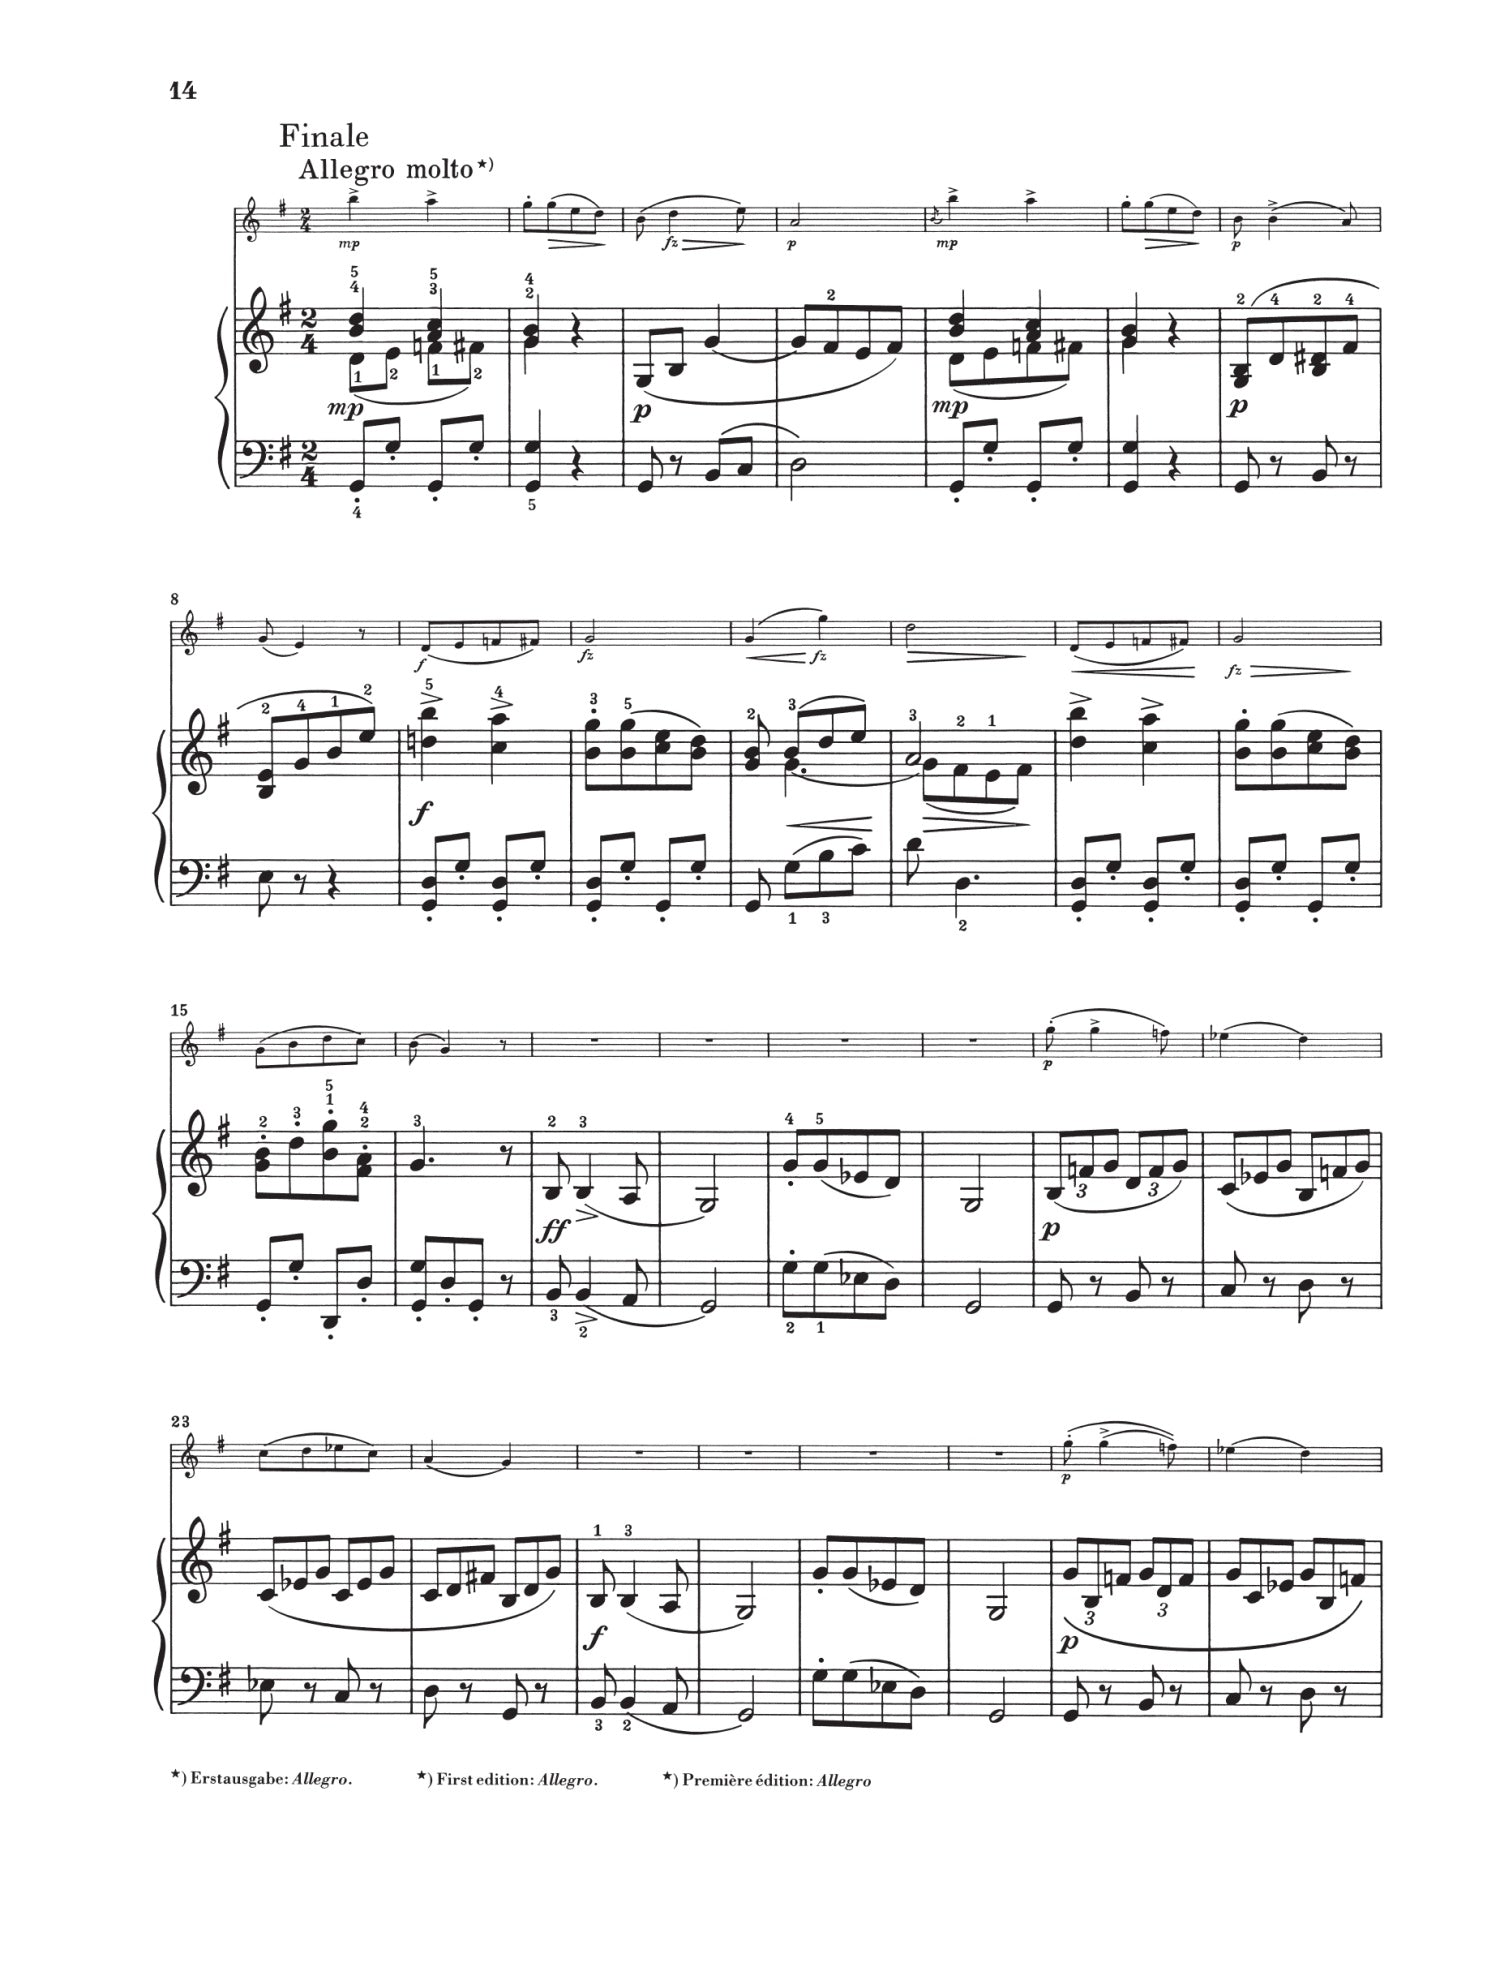 Dvorak: Violin Sonatina in G Major Op 100 for Violin & Piano